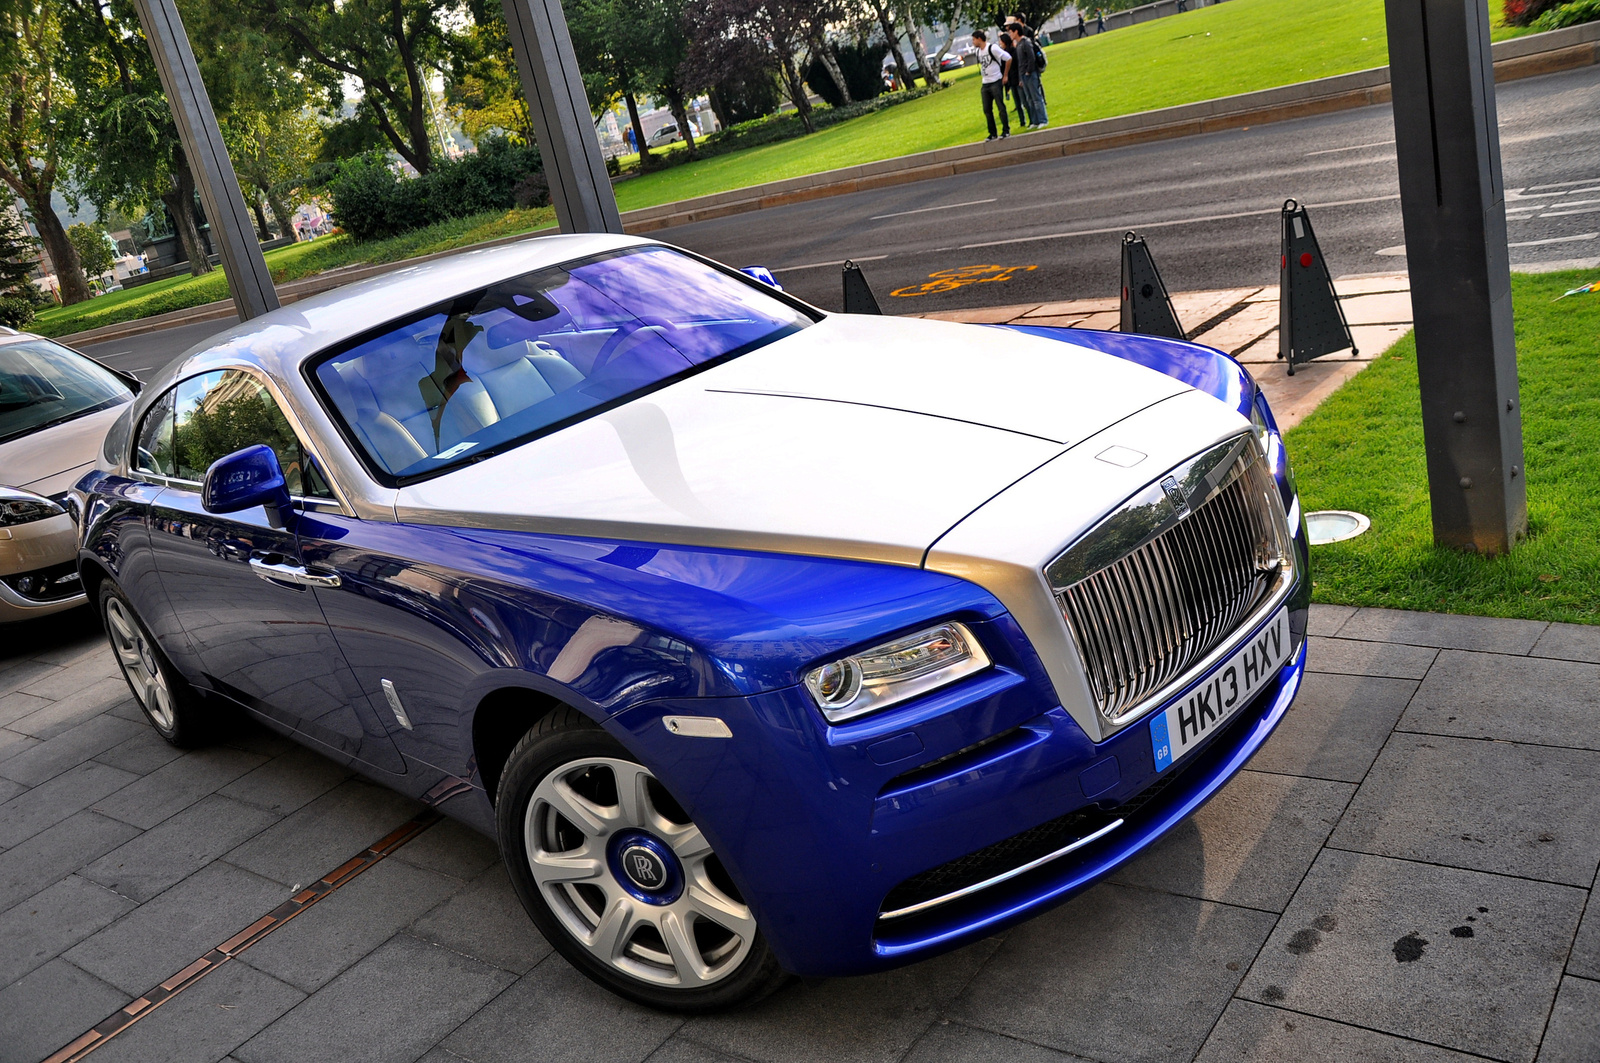 Rolls-Royce Wraith 003